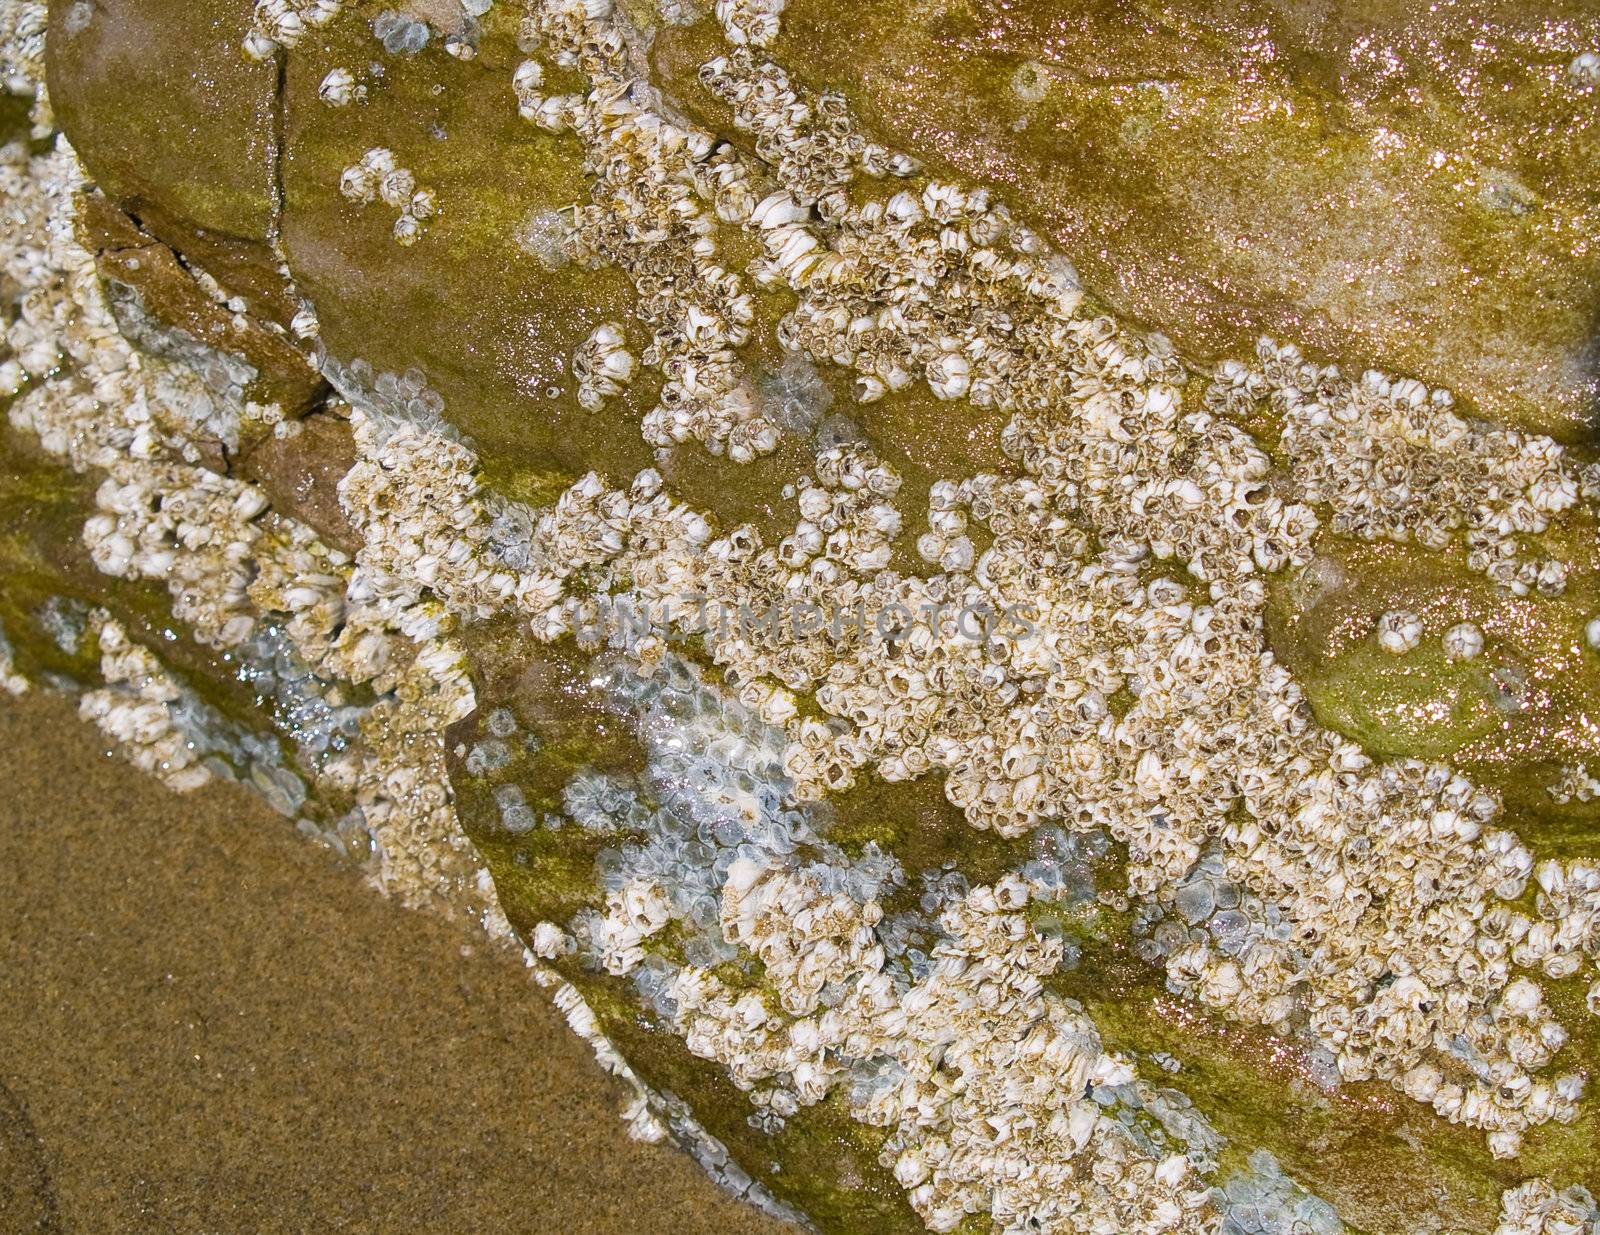 Barnacles on Rock on a Sandy Beach